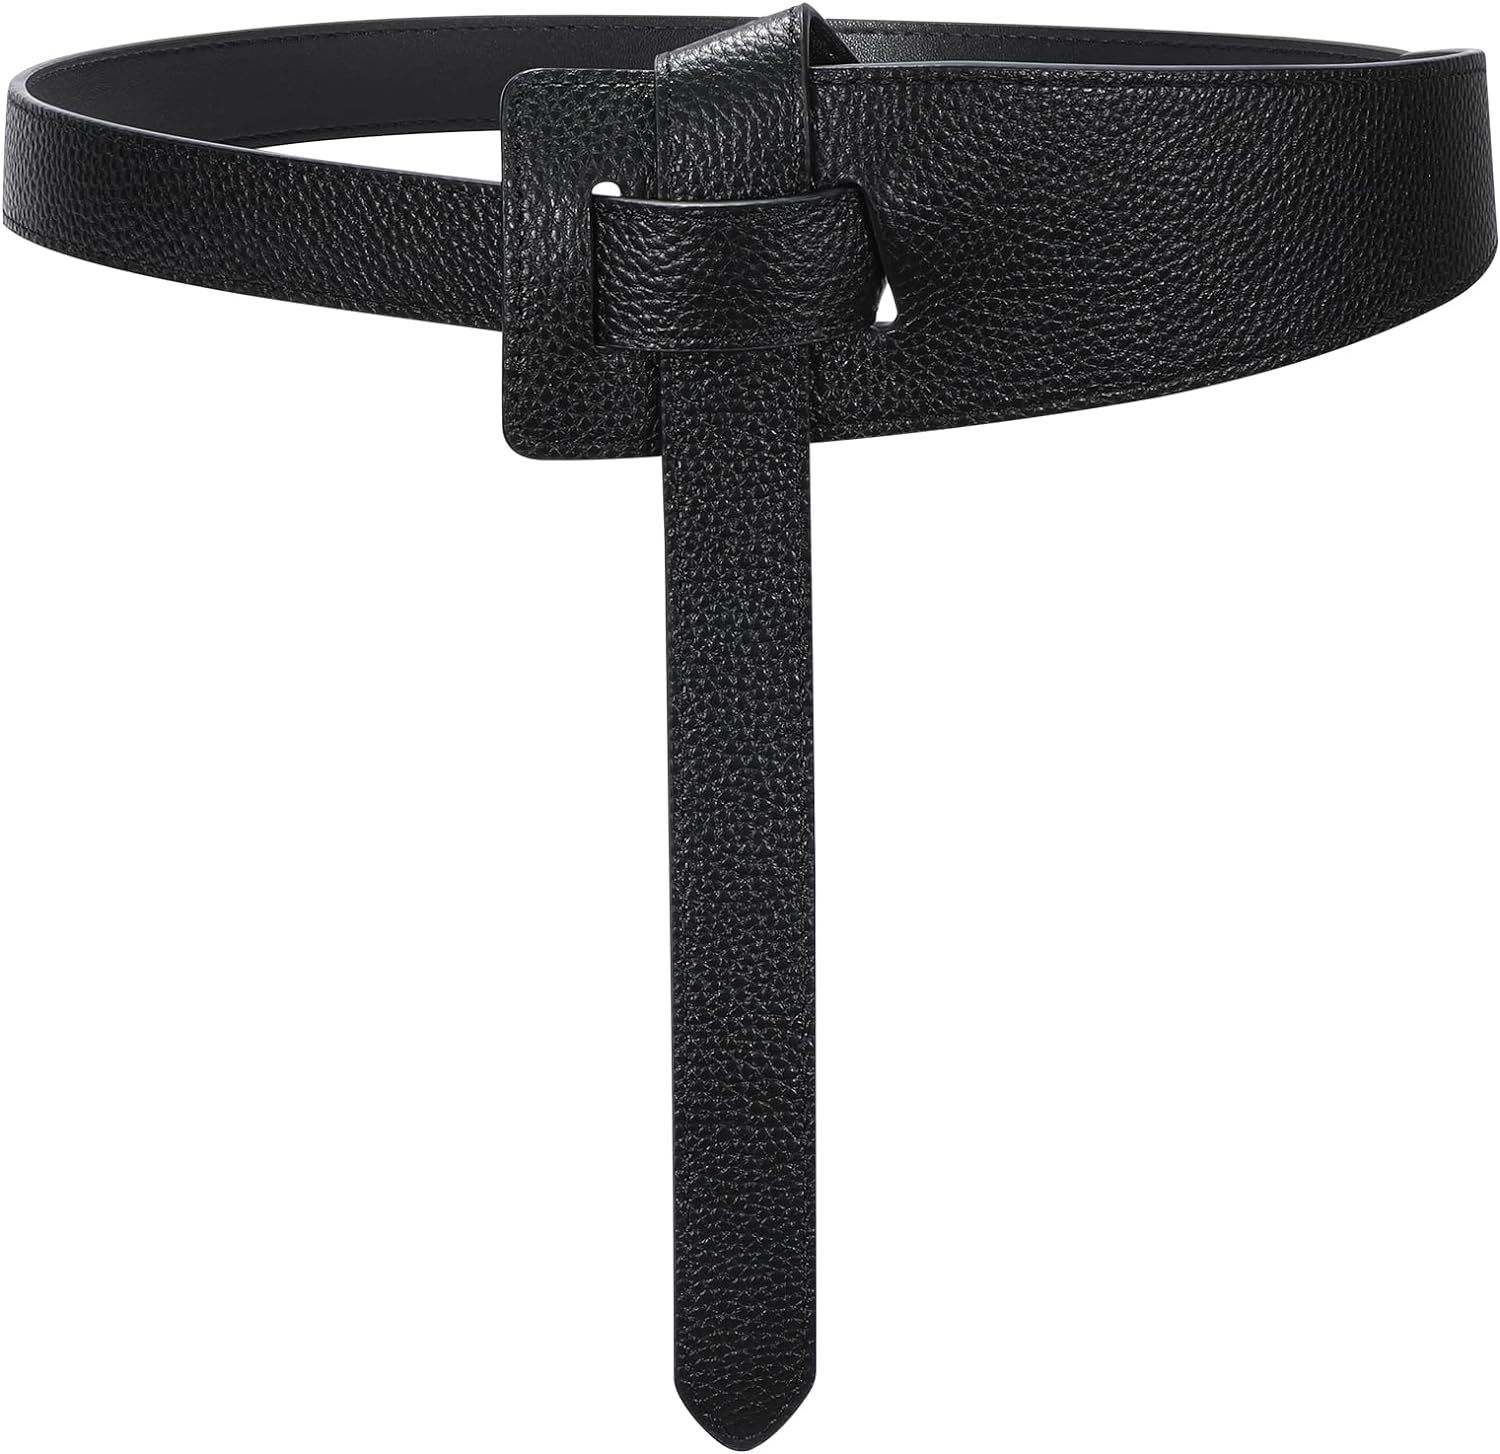 SUOSDEY Wome Genuine Leather Belt Fashion Knot Decor Belt Cowhide Leather Waist Belt for Dresses ... | Amazon (UK)